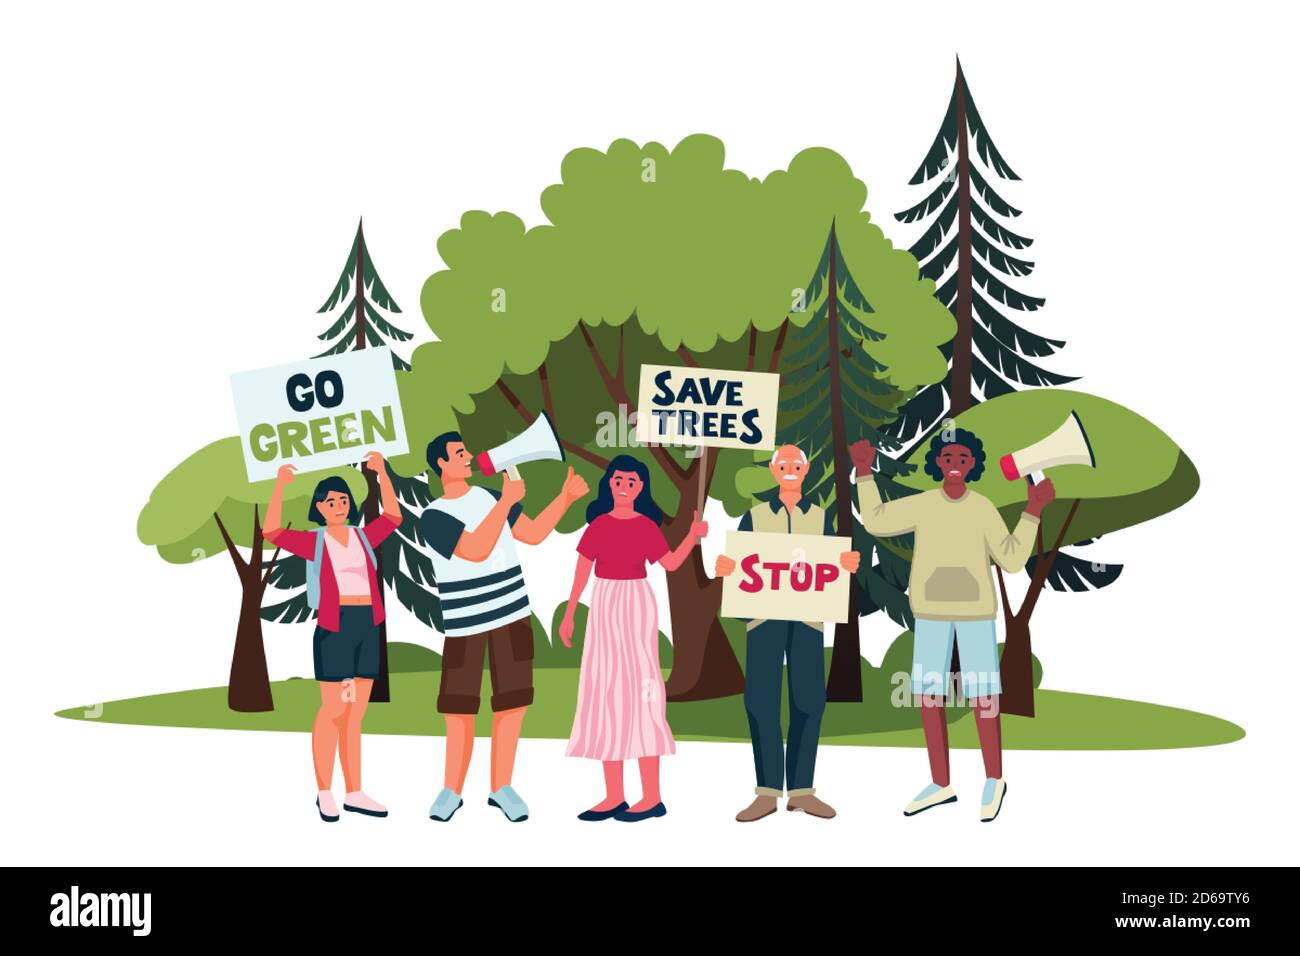 Les activistes de l'environnement font campagne contre la déforestation. Illustration d'une caricature vectorielle plate montrant des militants écologistes protestant avec des affiches en démonstration. Sa Illustration de Vecteur